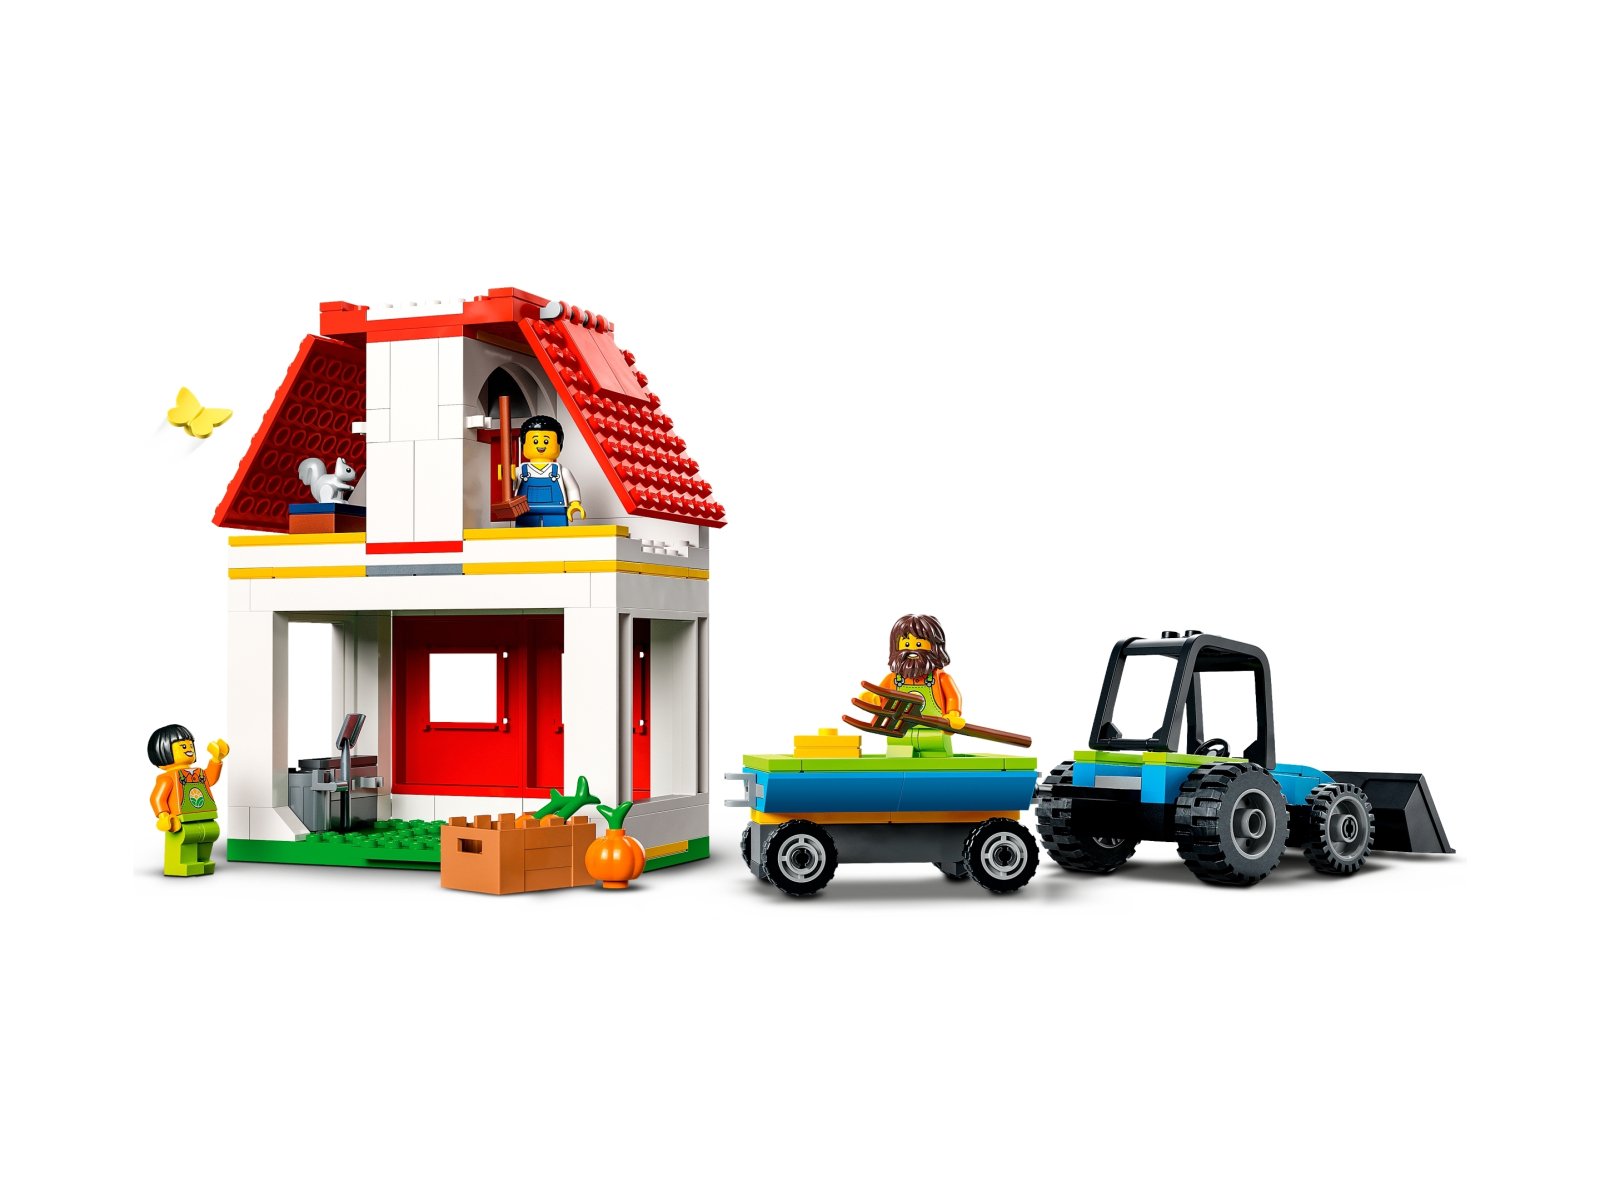 LEGO 60346 Stodoła i zwierzęta gospodarskie